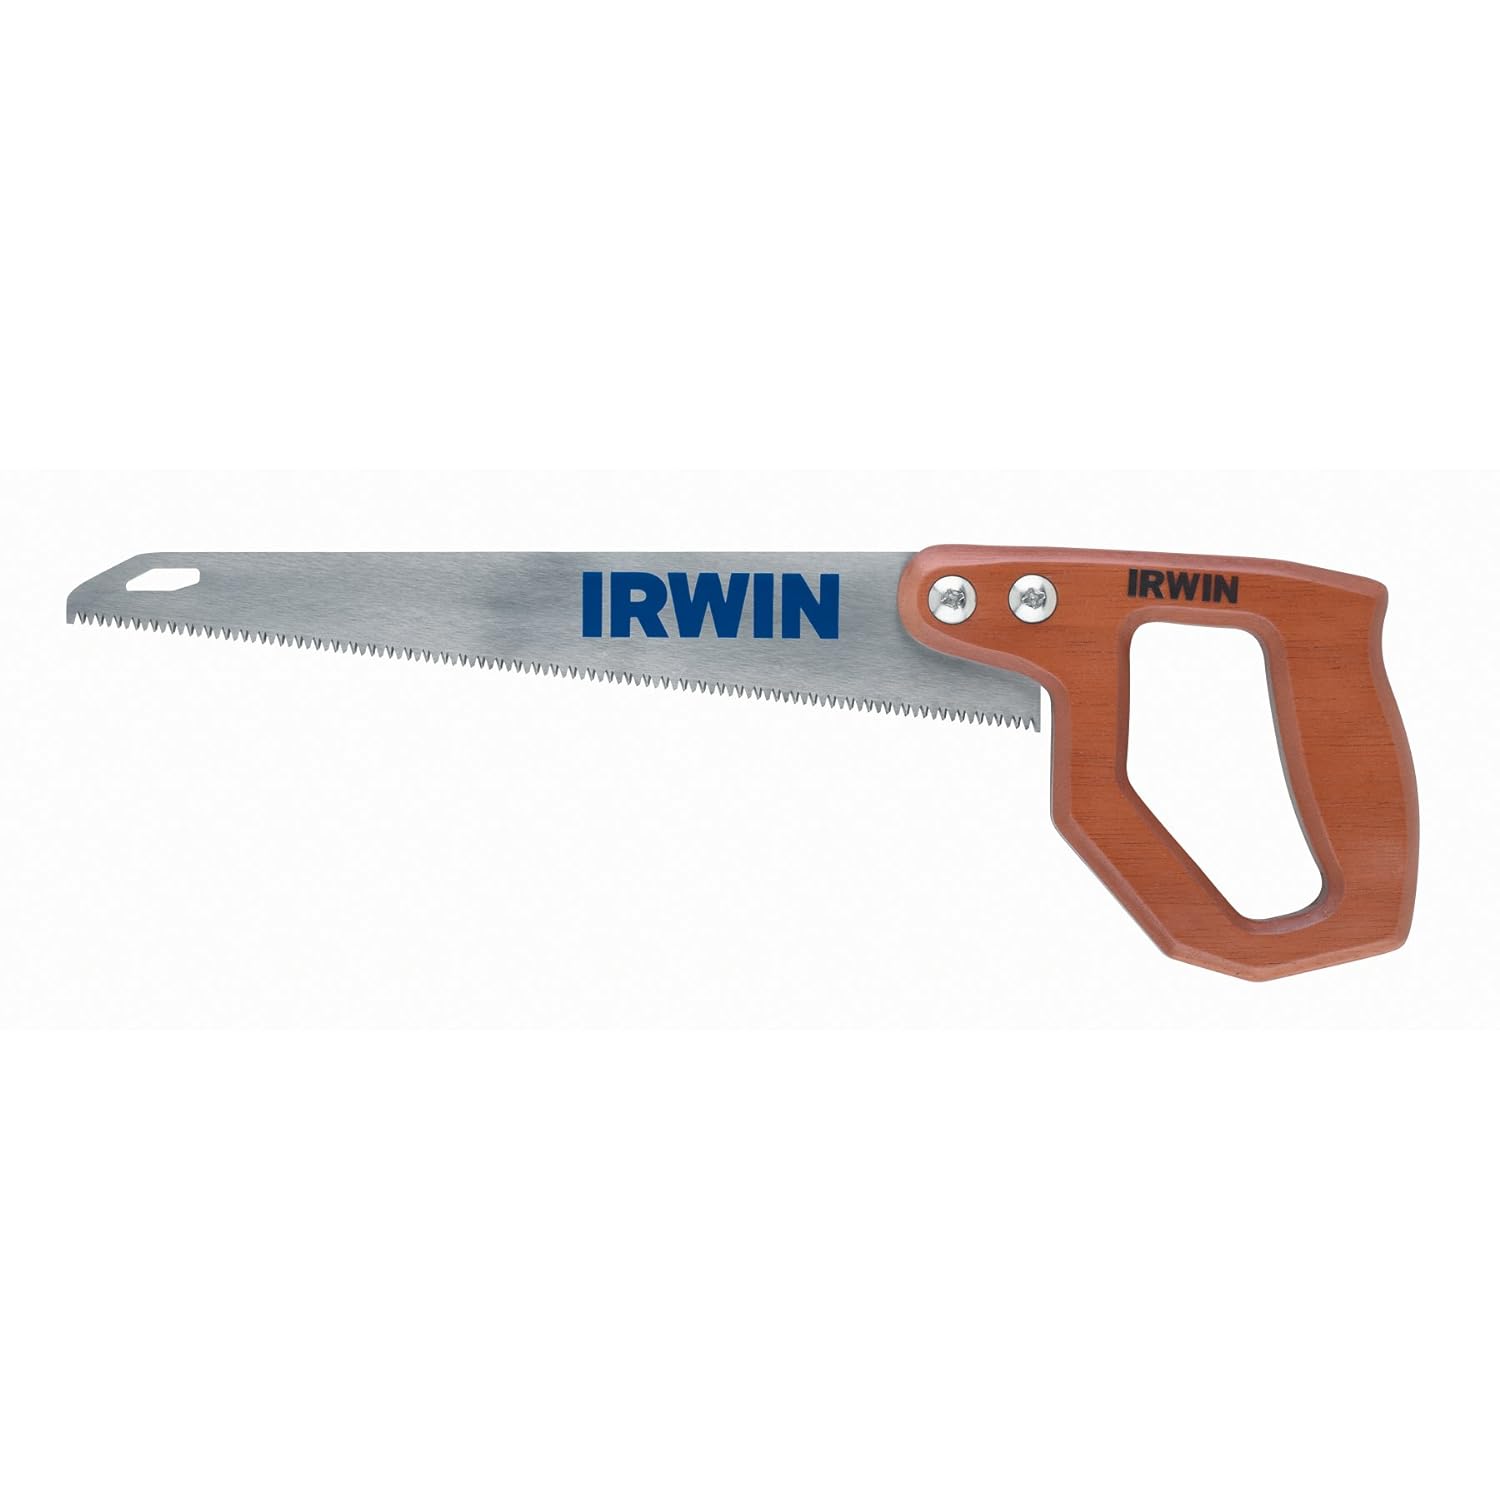 IRWIN 2014200 Standard Utility Saw